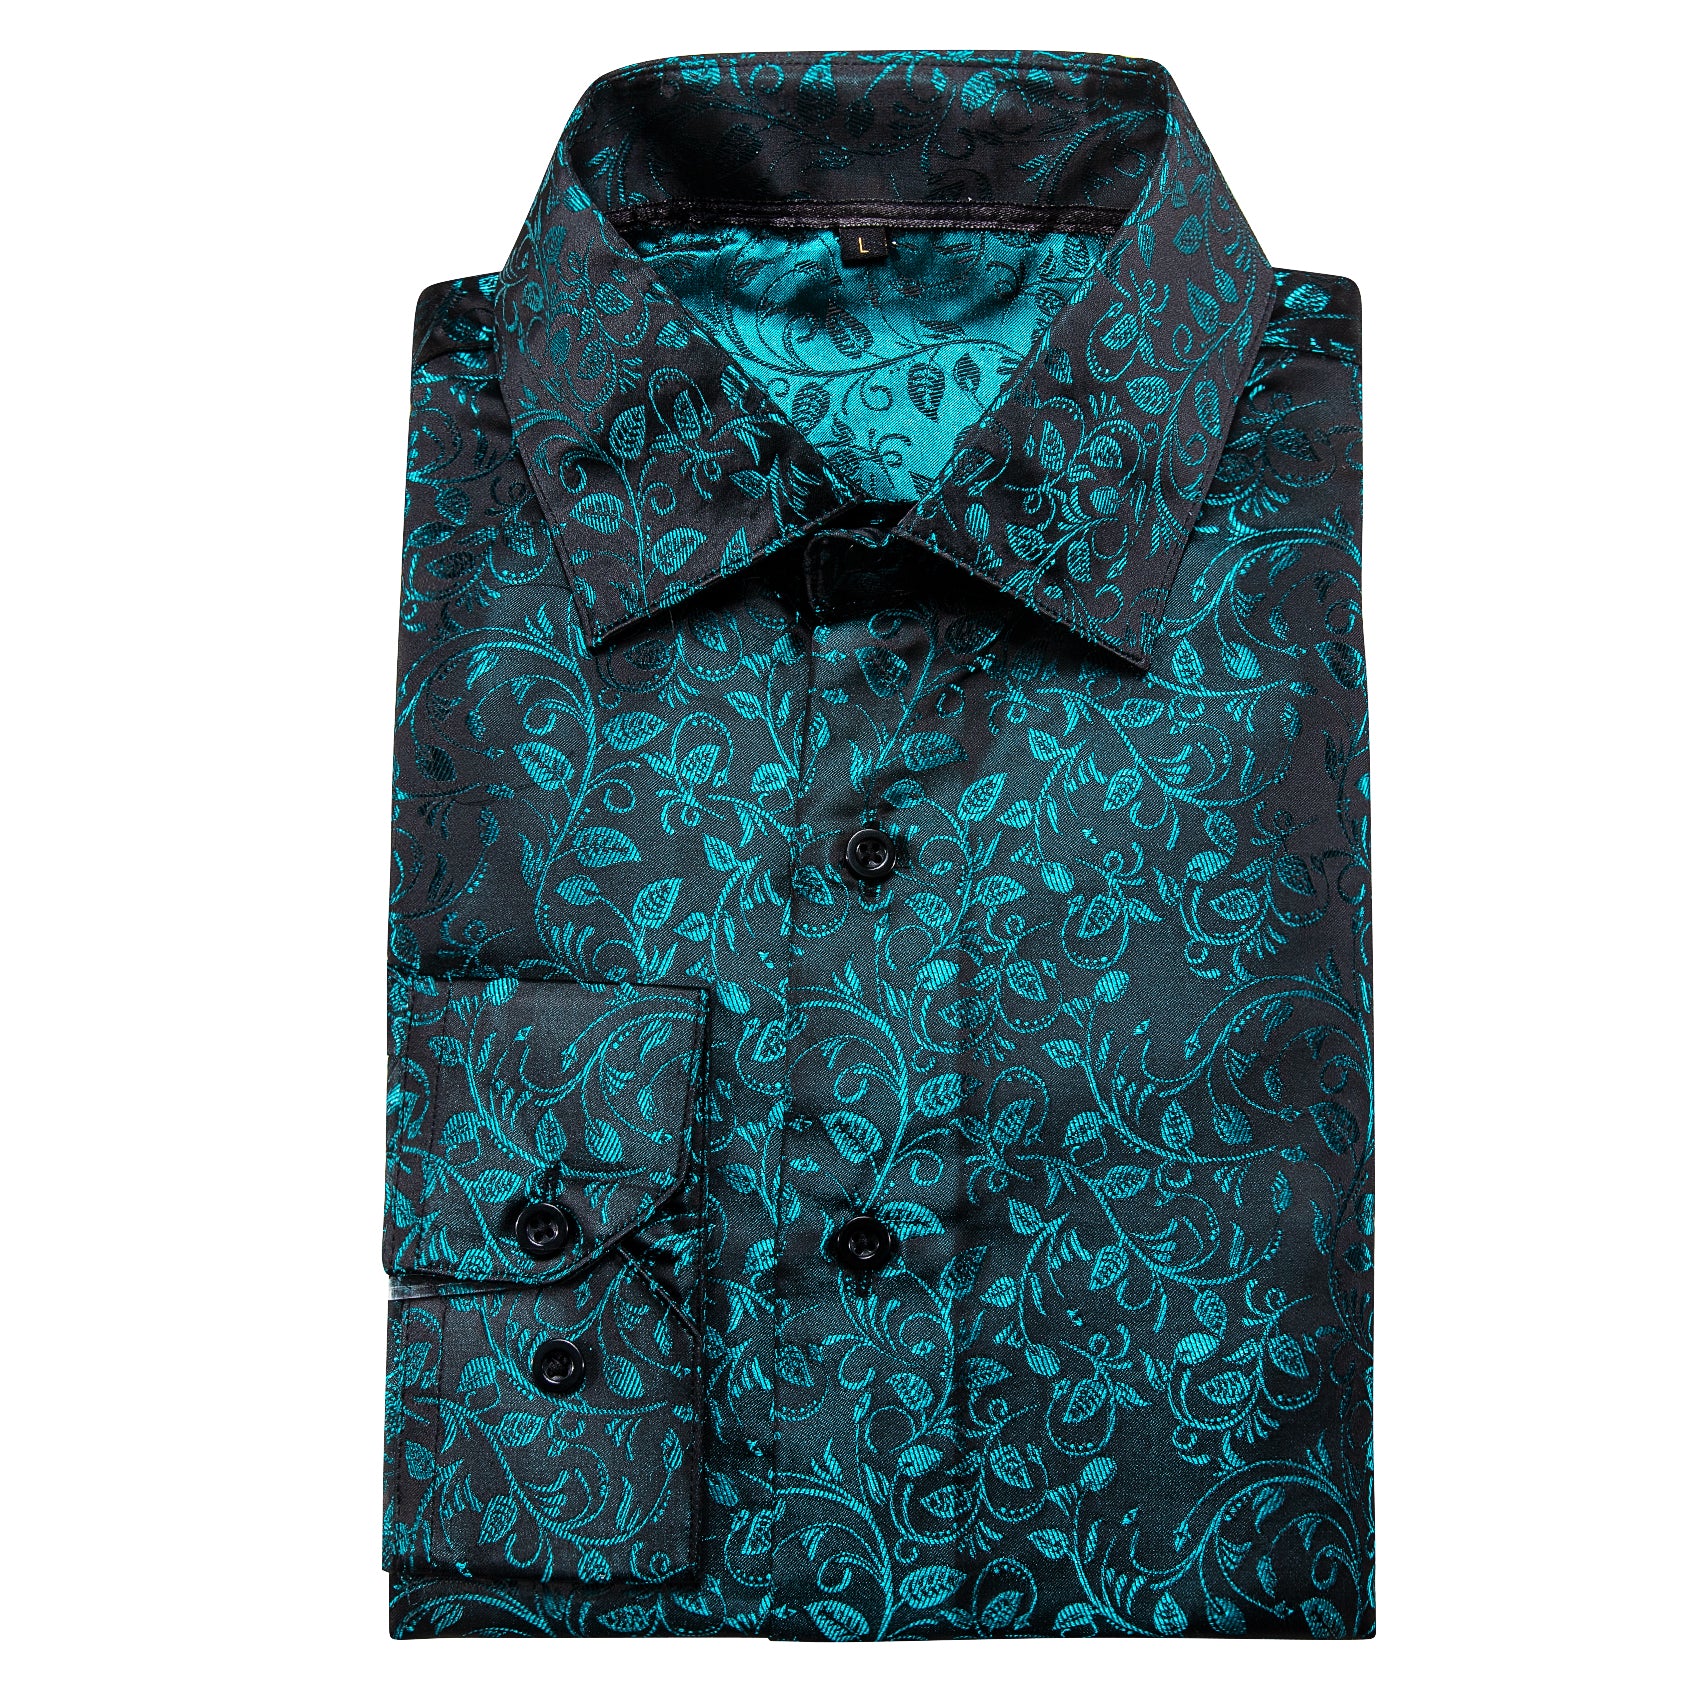 Barry.wang New Blue Black Floral Silk Shirt